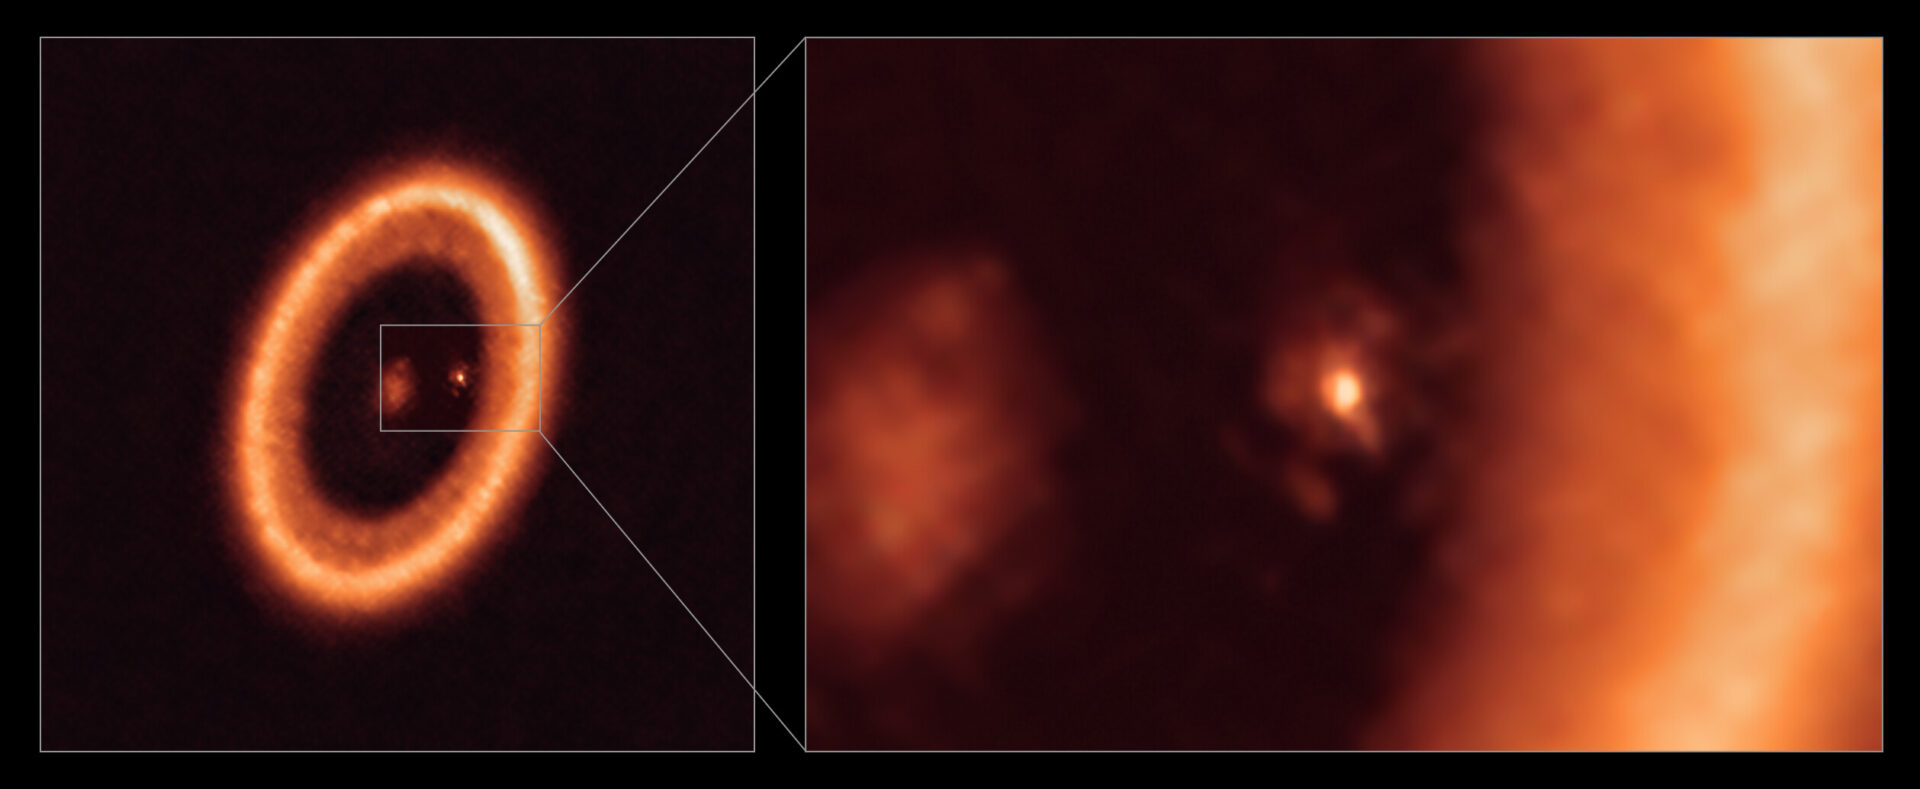 <p>Esta imagen, tomada con el Atacama Large Millimeter/submillimeter Array (ALMA), del que ESO es socio, muestra una imagen de amplio campo (izquierda) y una ampliación (derecha) del disco lunar que rodea a PDS 70c, un planeta joven similar a Júpiter a casi 400 años luz de distancia. La ampliación muestra a PDS 70c y a su disco circumplanetario centrado y de frente, con el gran disco circunestelar en forma de anillo ocupando la mayor parte del lado derecho de la imagen. La estrella PDS 70 está en el centro de la imagen de amplio campo, a la izquierda.</p>
<p>Se han descubierto dos planetas en el sistema, PDS 70c y PDS 70b, aunque este último no es visible en esta imagen. Han horadado una cavidad en el disco circunestelar mientras engullían material del propio disco, creciendo en tamaño. En este proceso, PDS 70c adquirió su propio disco circumplanetario, que contribuye al crecimiento del planeta y donde se pueden formar lunas. Este disco circumplanetario es tan grande como la distancia Sol-Tierra y tiene suficiente masa para formar hasta tres satélites del tamaño de la Luna.</p>
<p>Crédito:<br />
ALMA (ESO/NAOJ/NRAO)/Benisty et al.</p>
